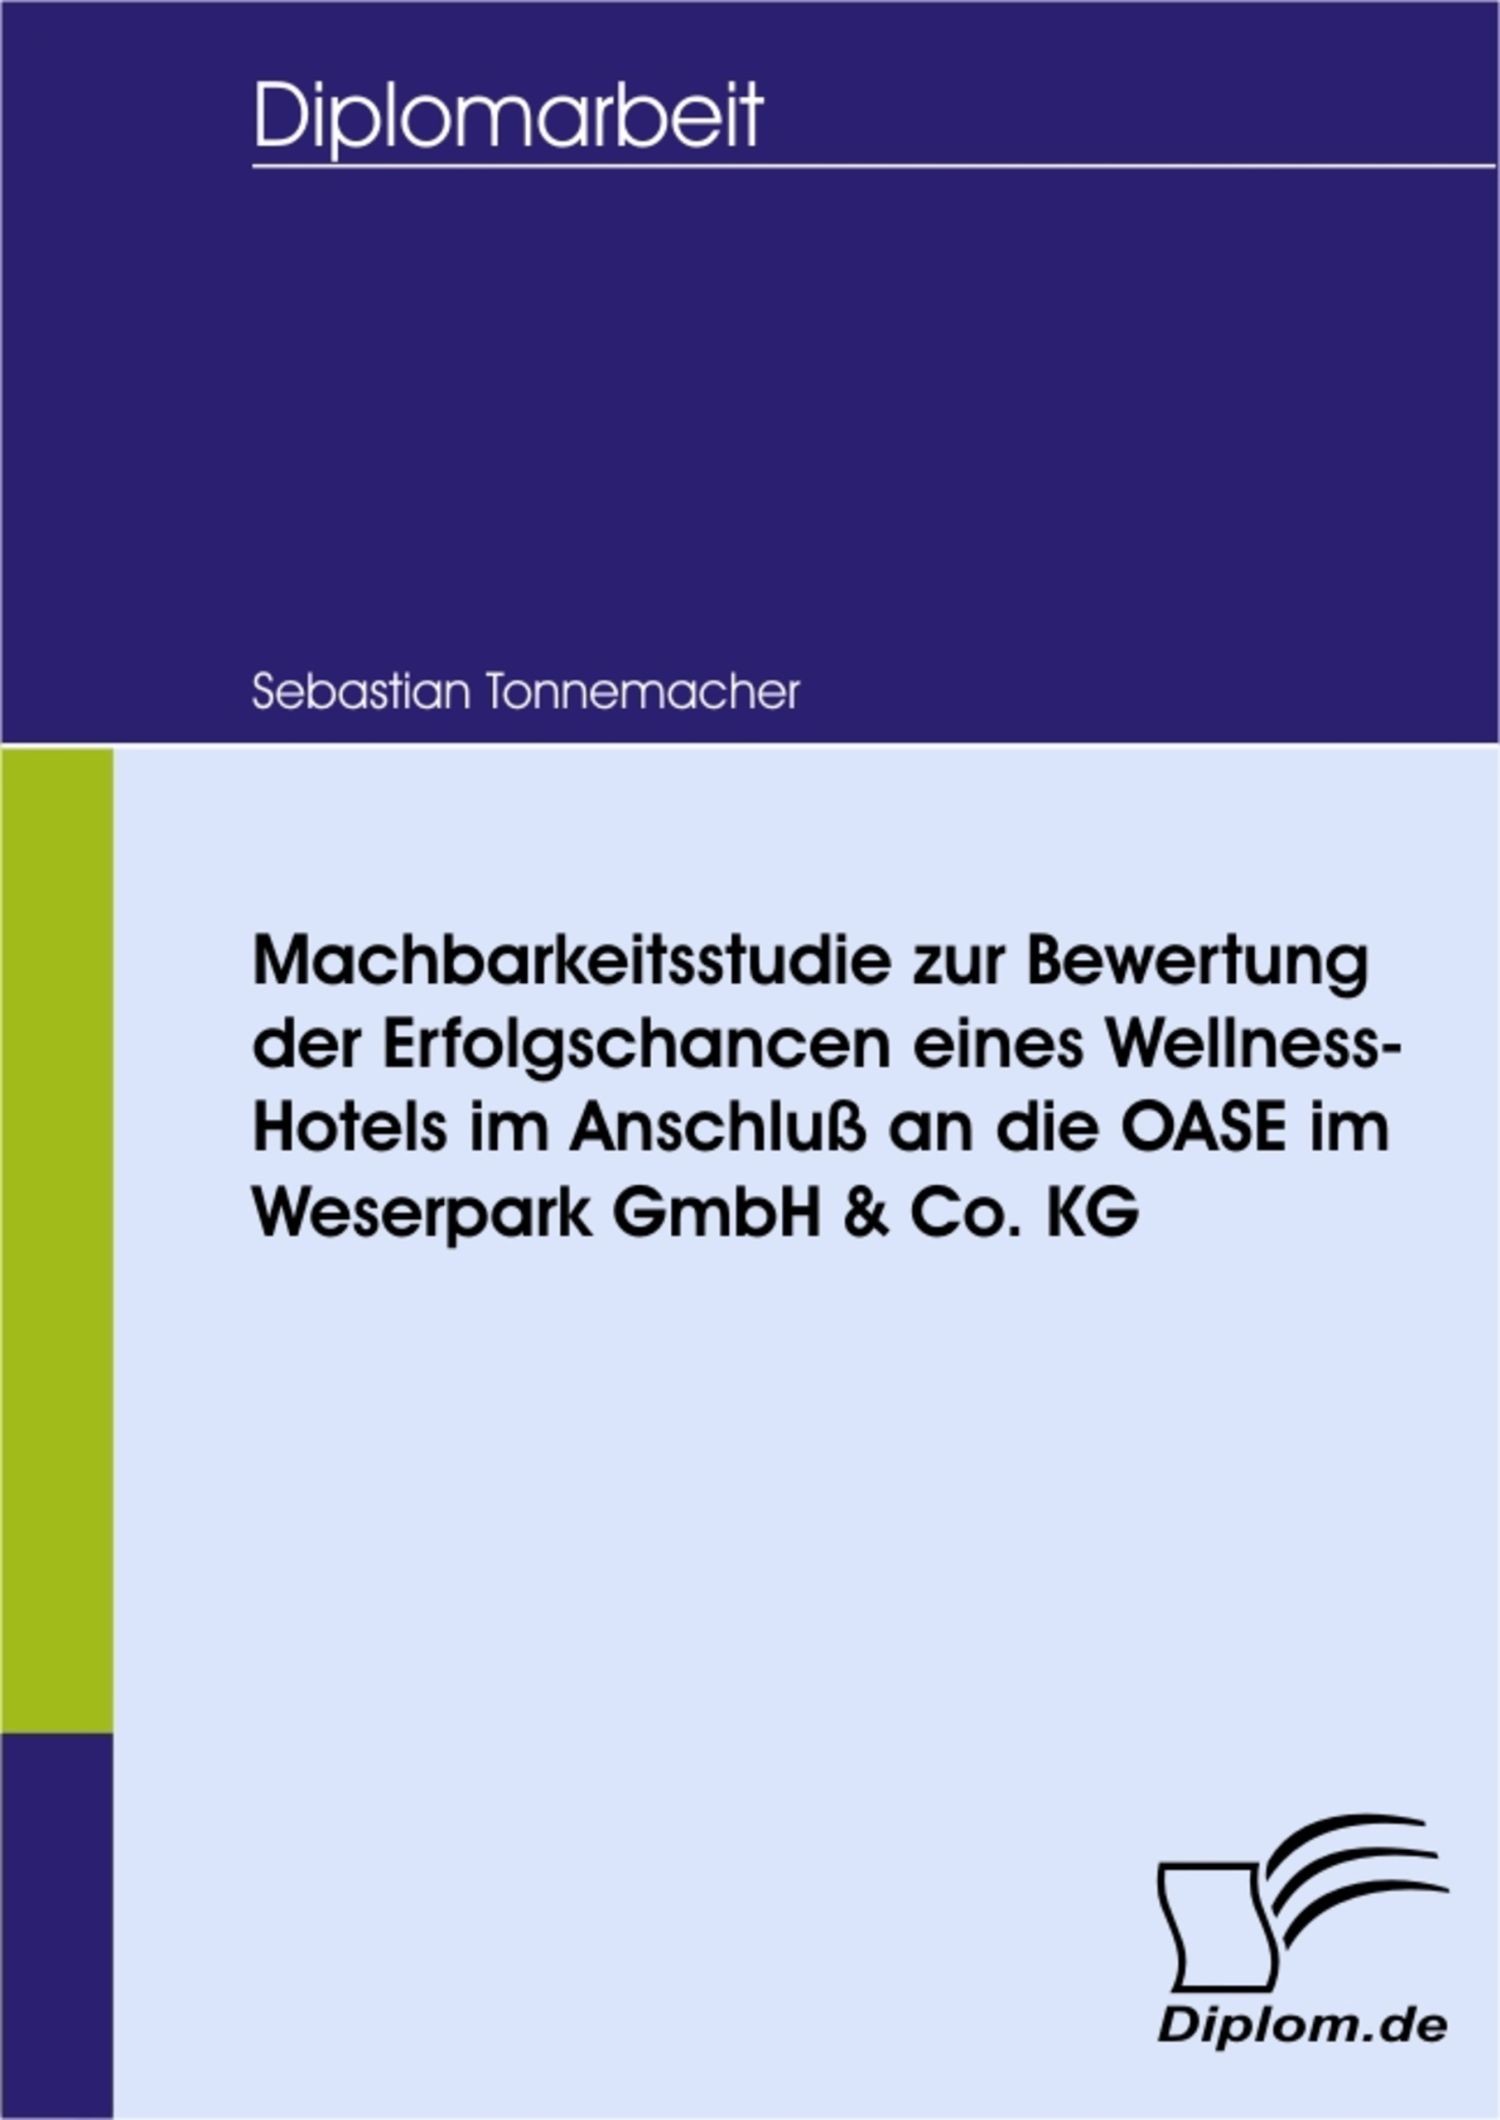 Machbarkeitsstudie zur Bewertung der Erfolgschancen eines Wellness-Hotels im Anschluß an die OASE im Weserpark GmbH & Co. KG